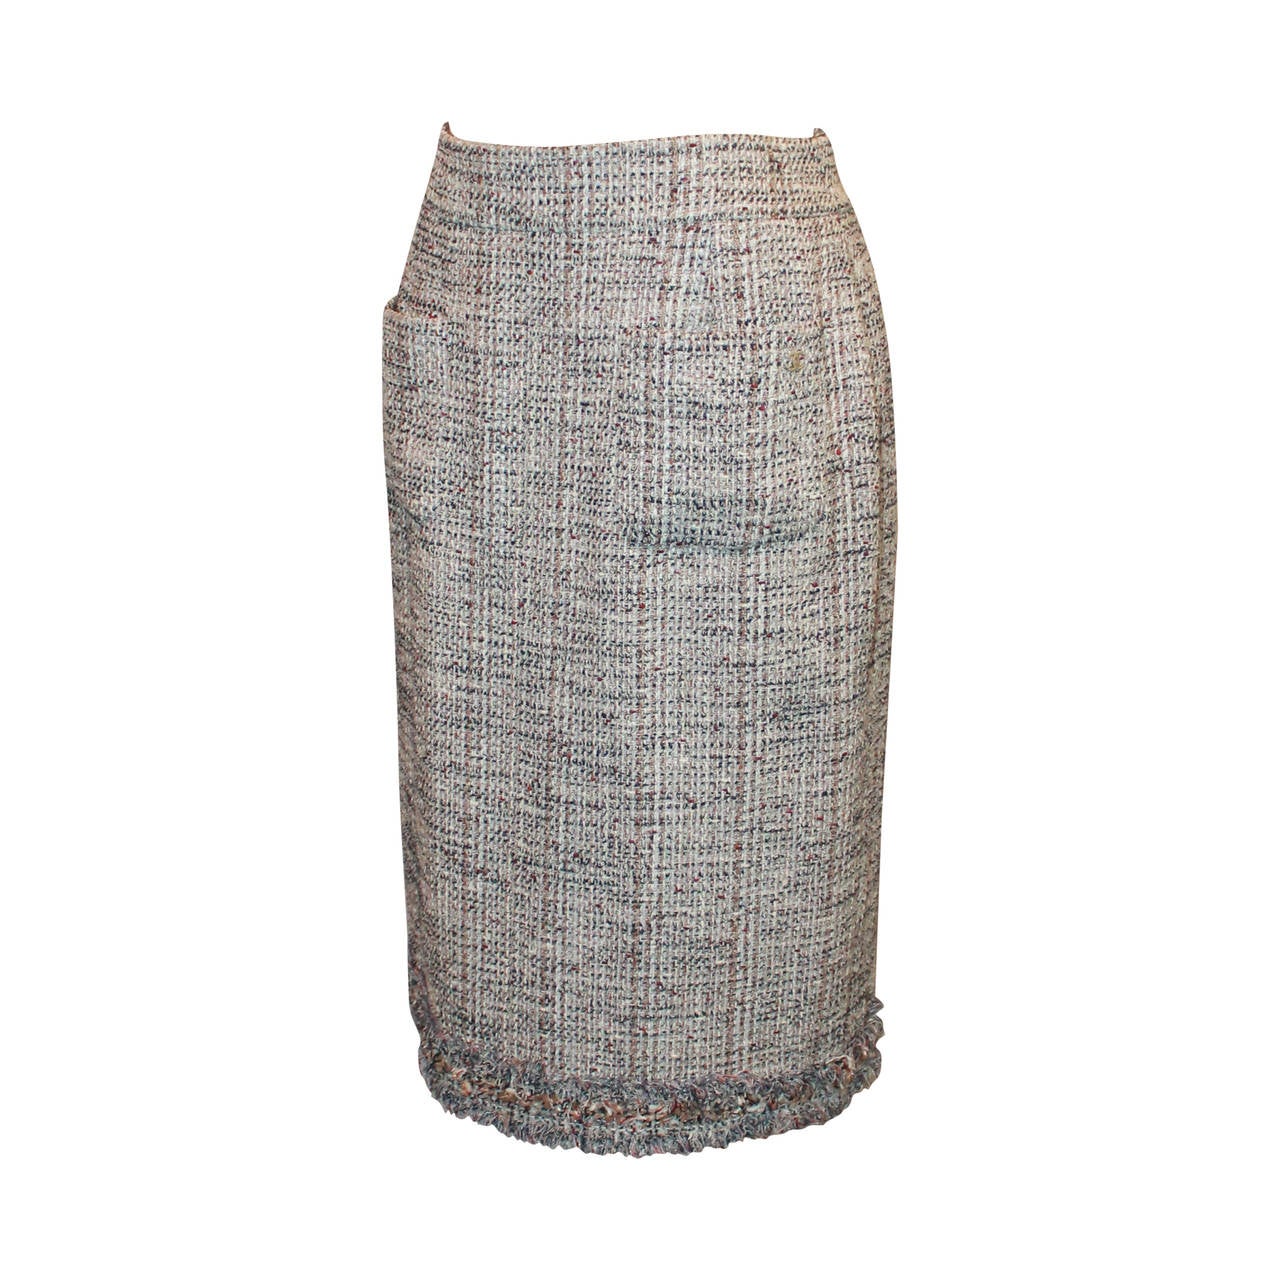 Chanel Beige & Earthtones Tweed 2-Pocket Skirt - 42